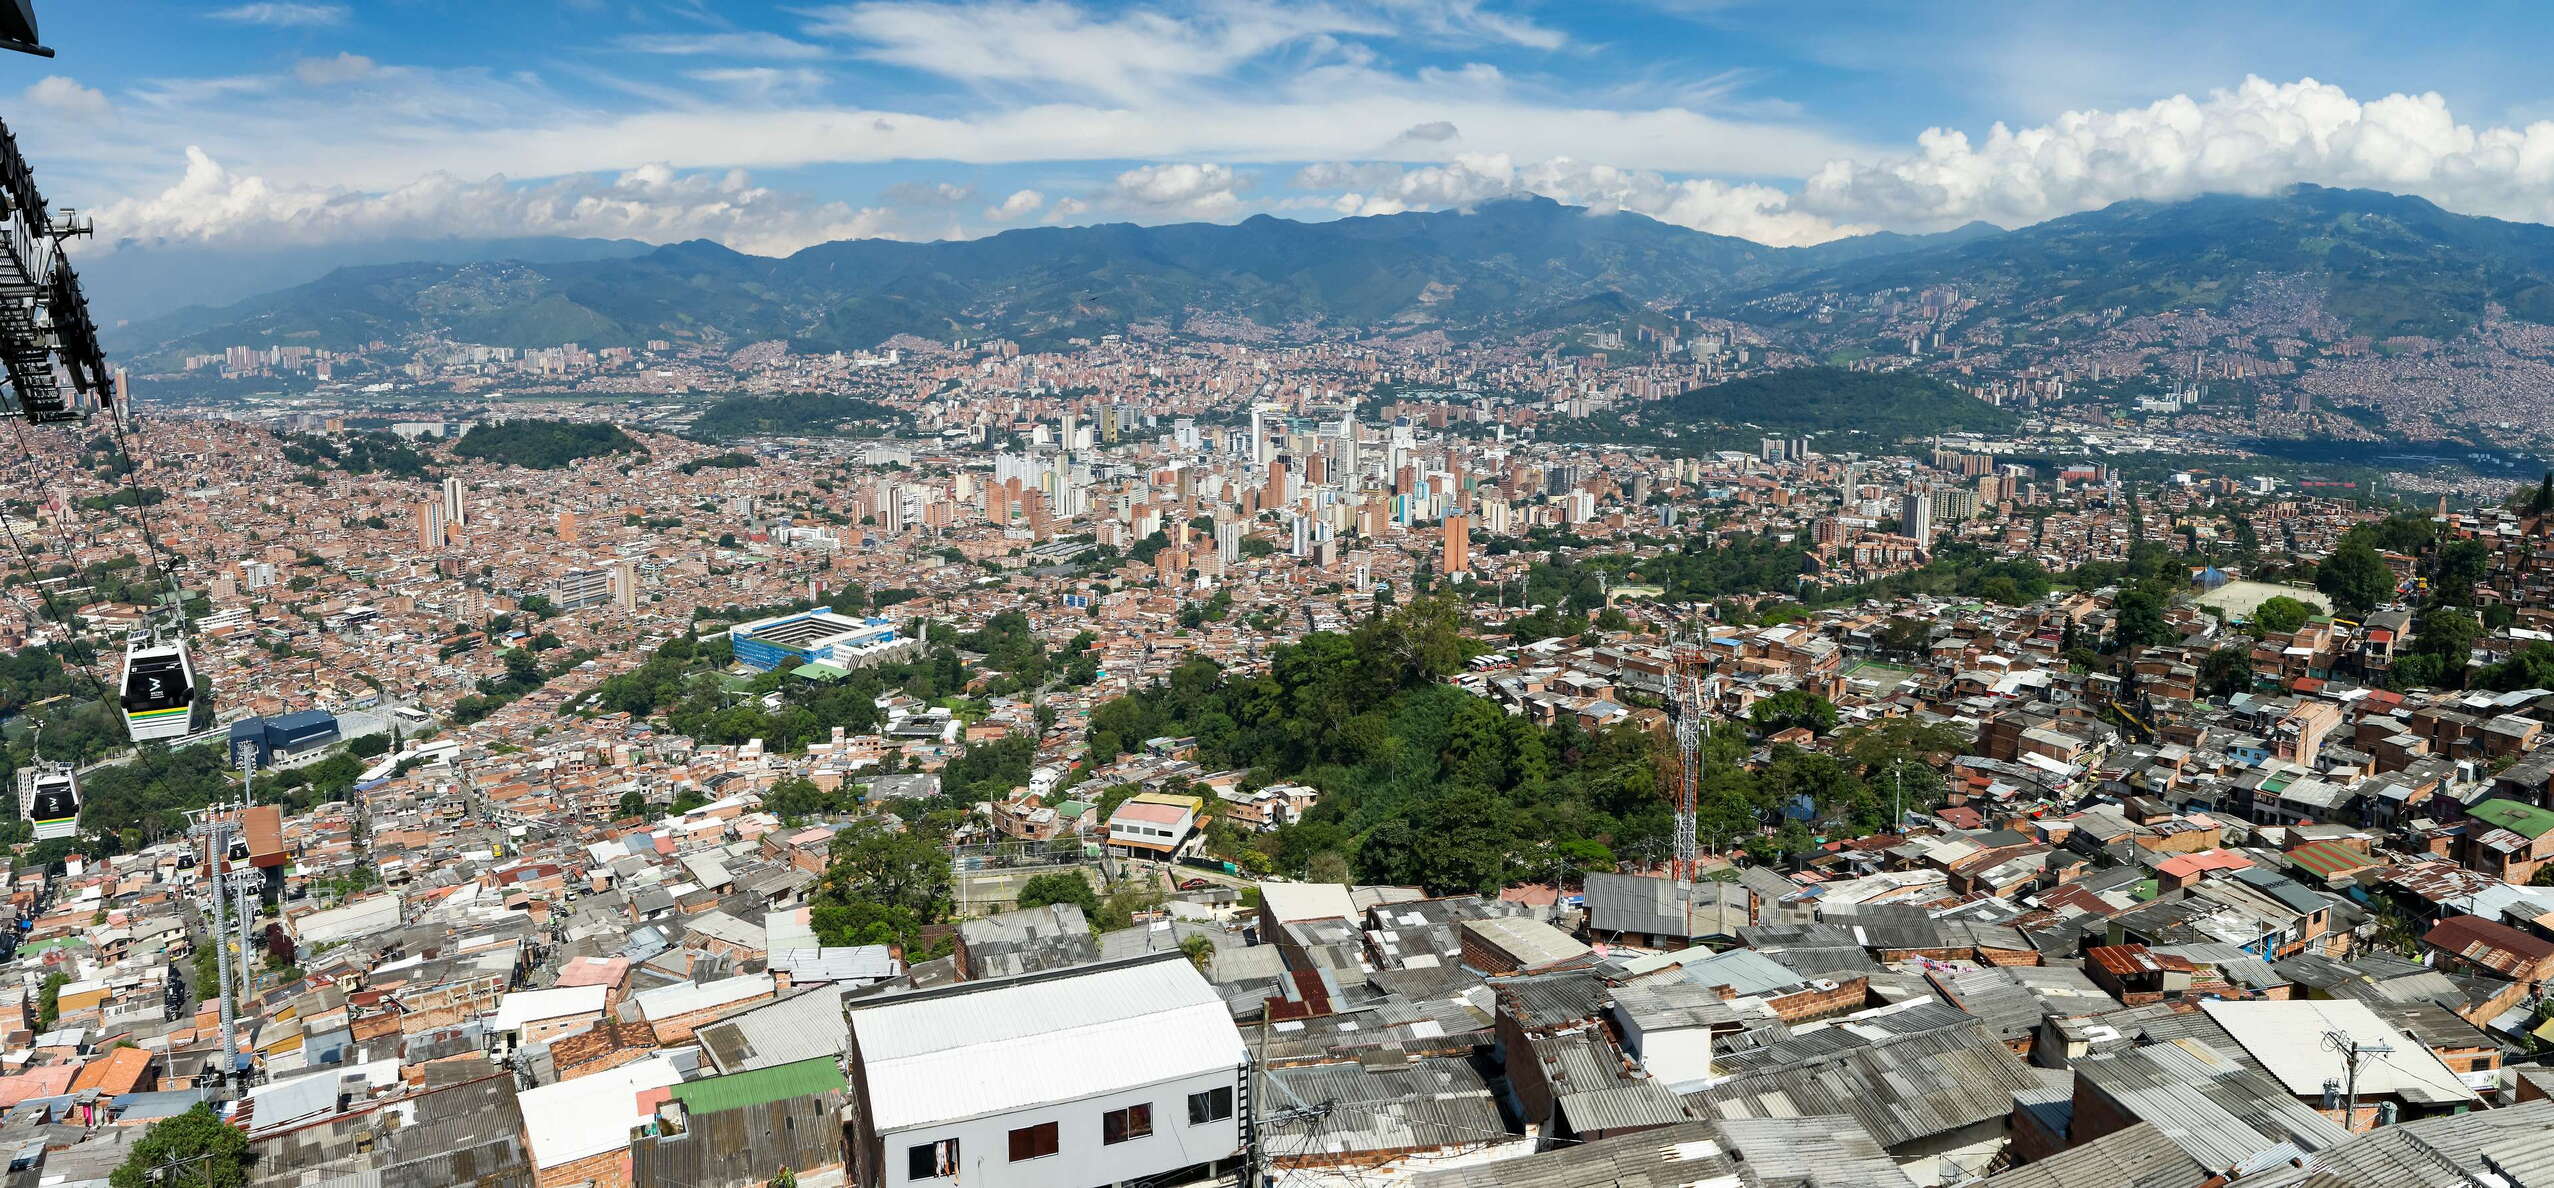 Medellín with Trece de Noviembre